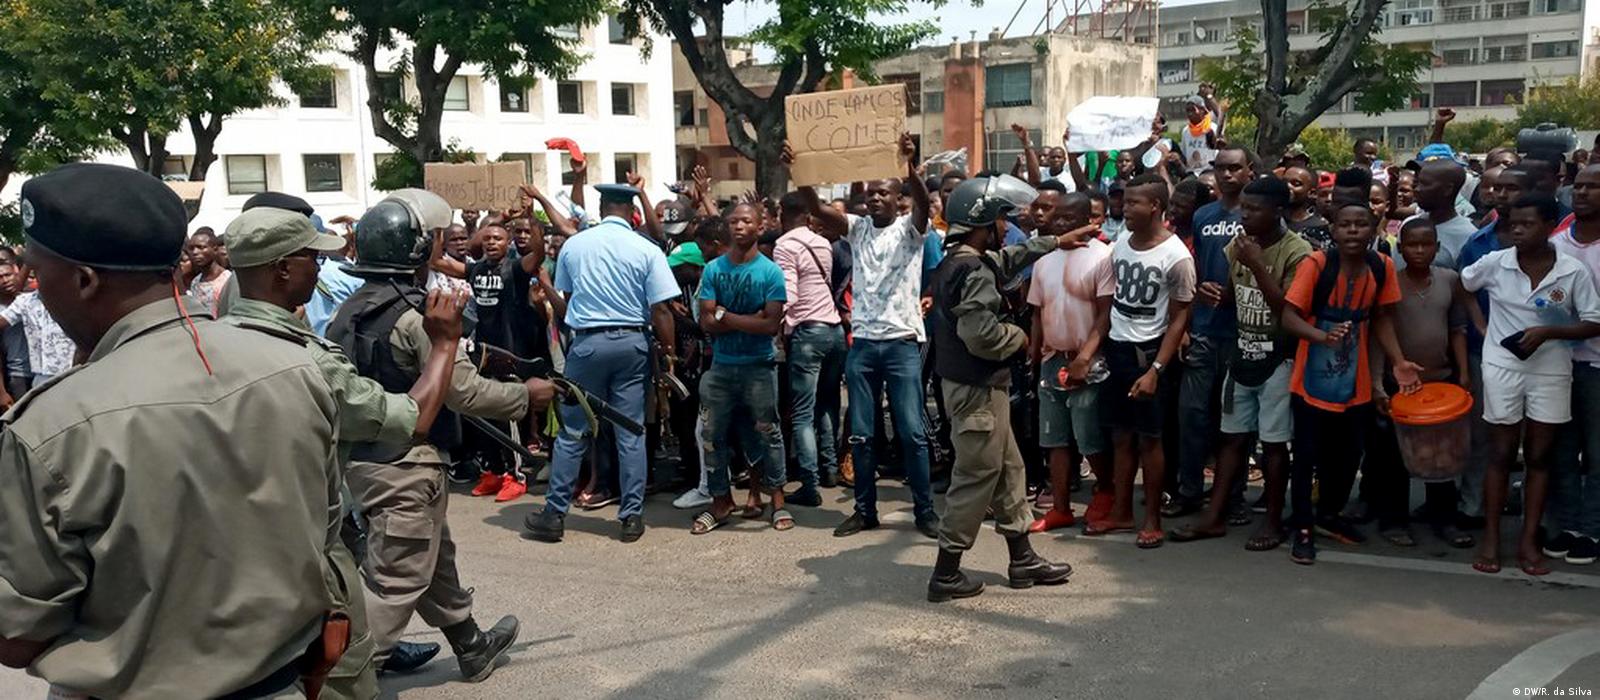 Direito à manifestação em Moçambique: "As ruas são nossas"